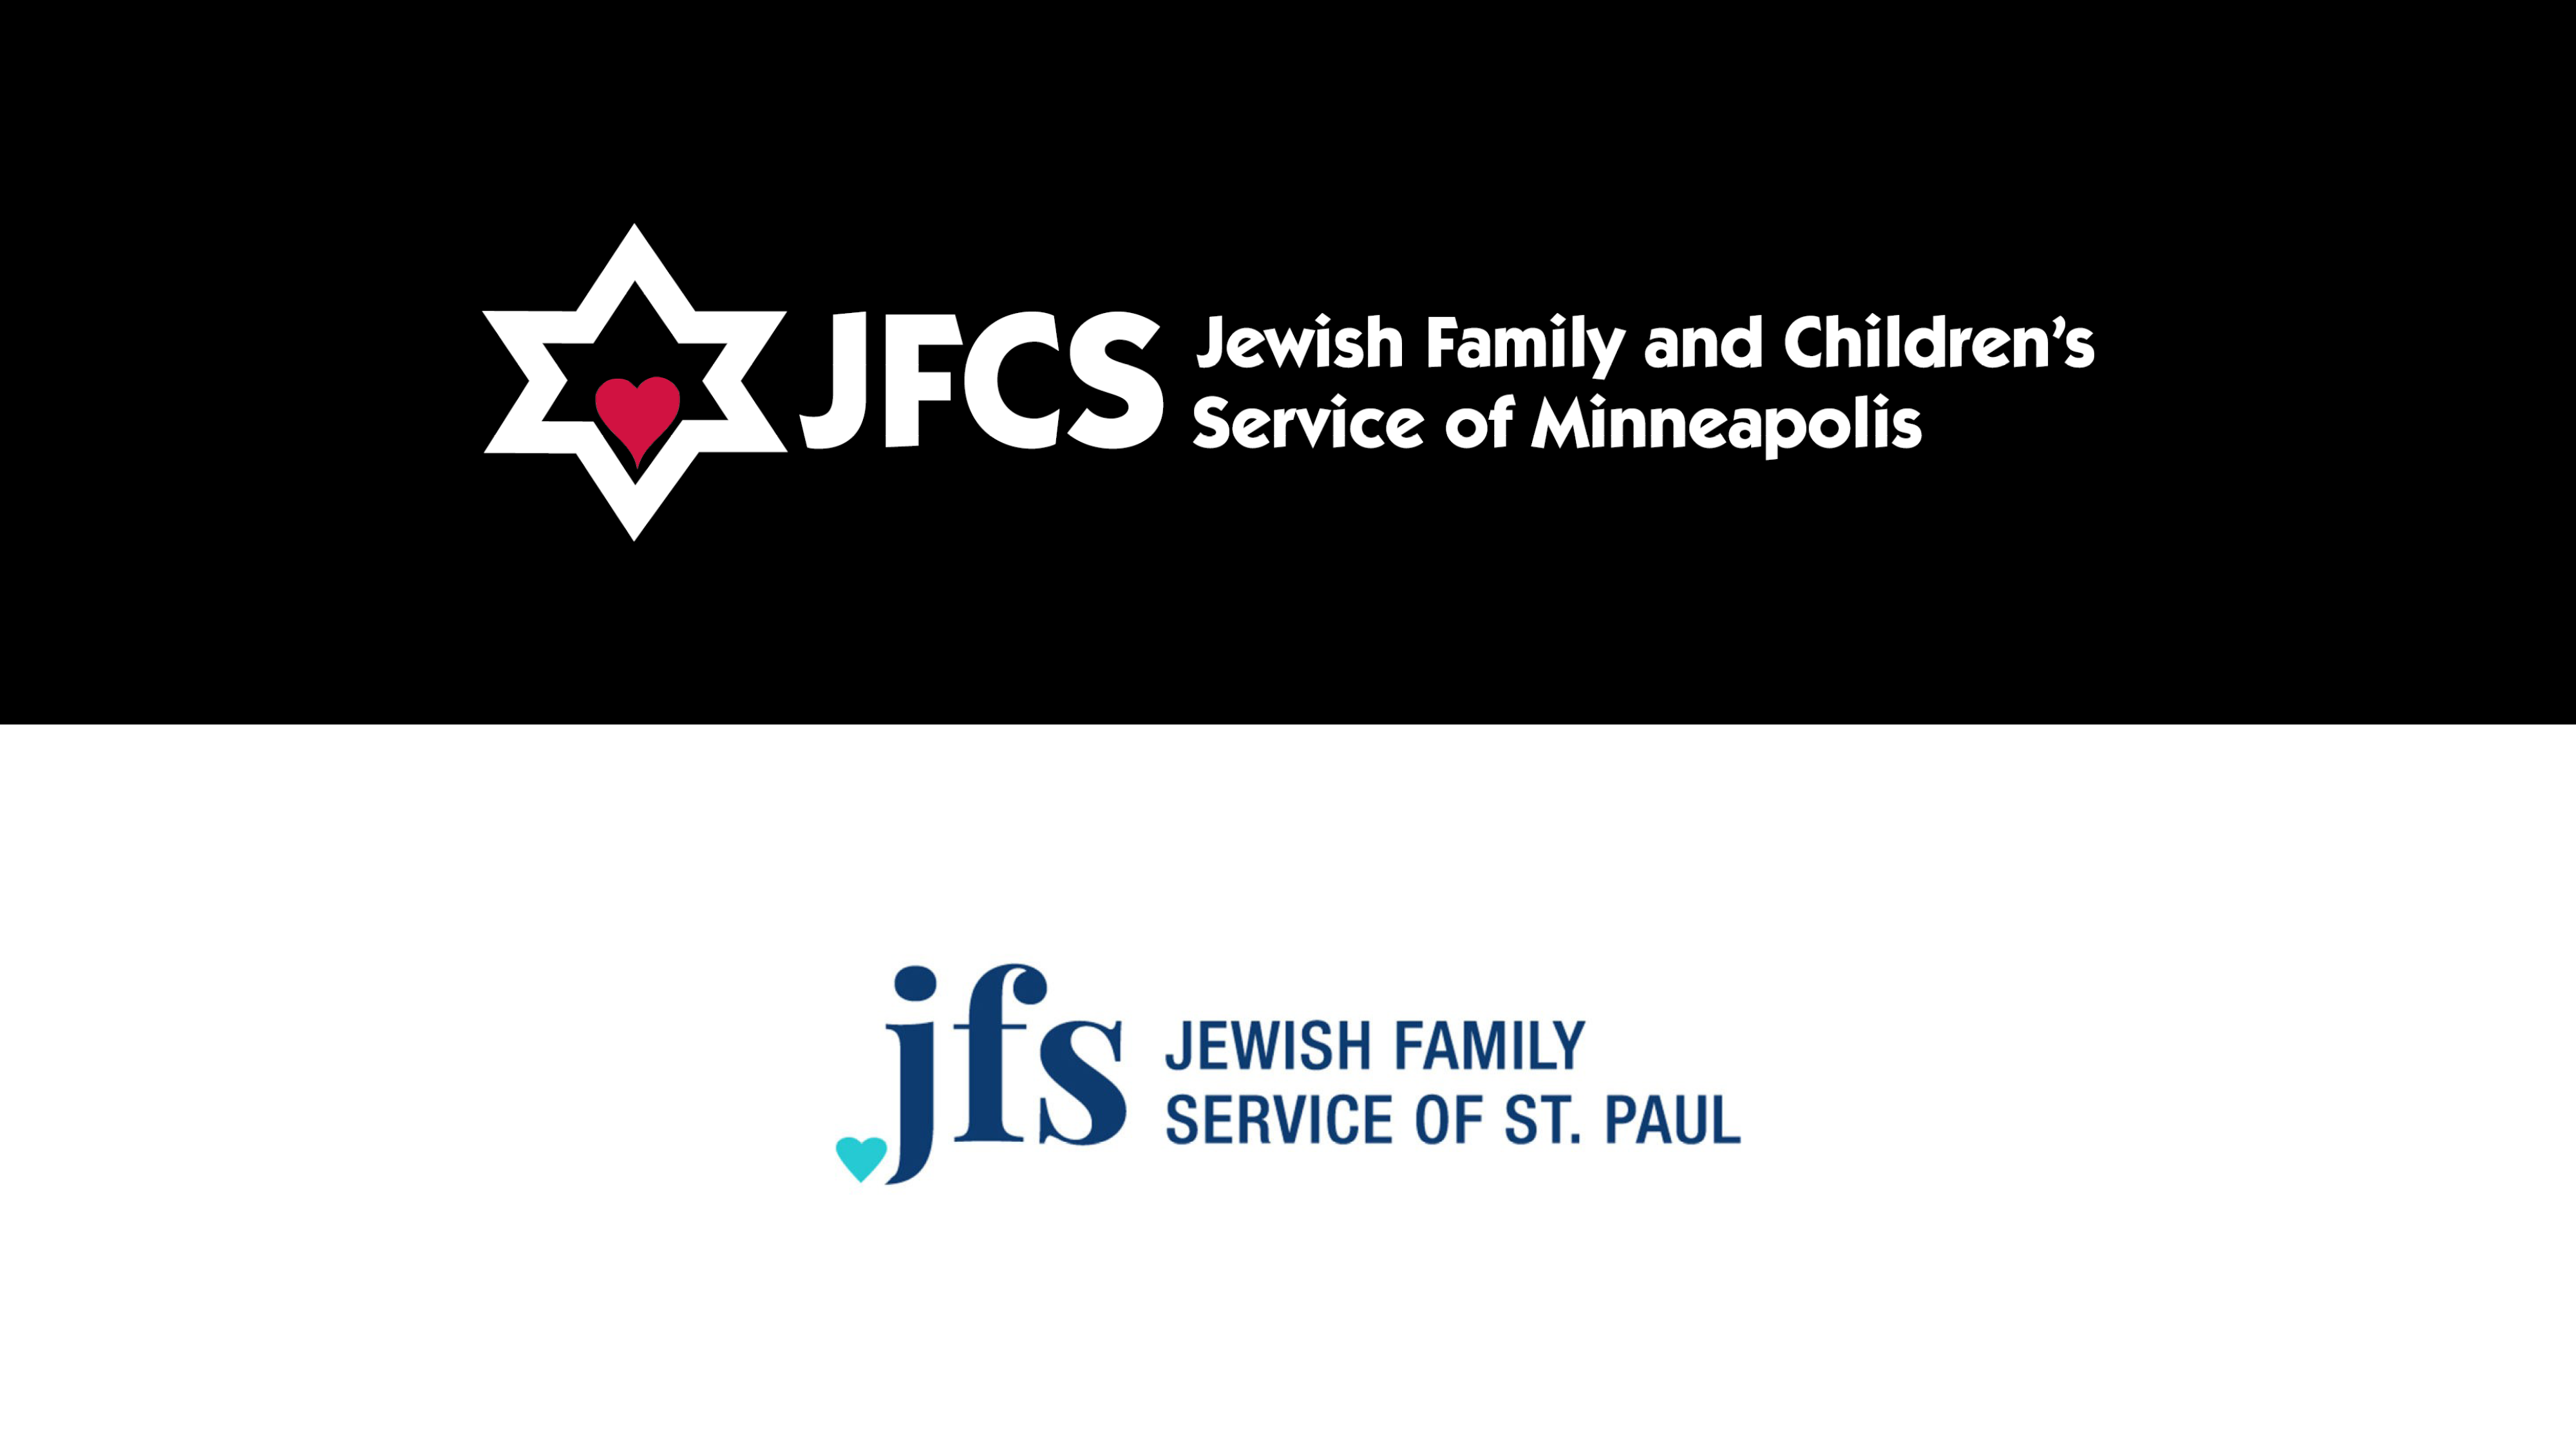 JFCS and JFS logos